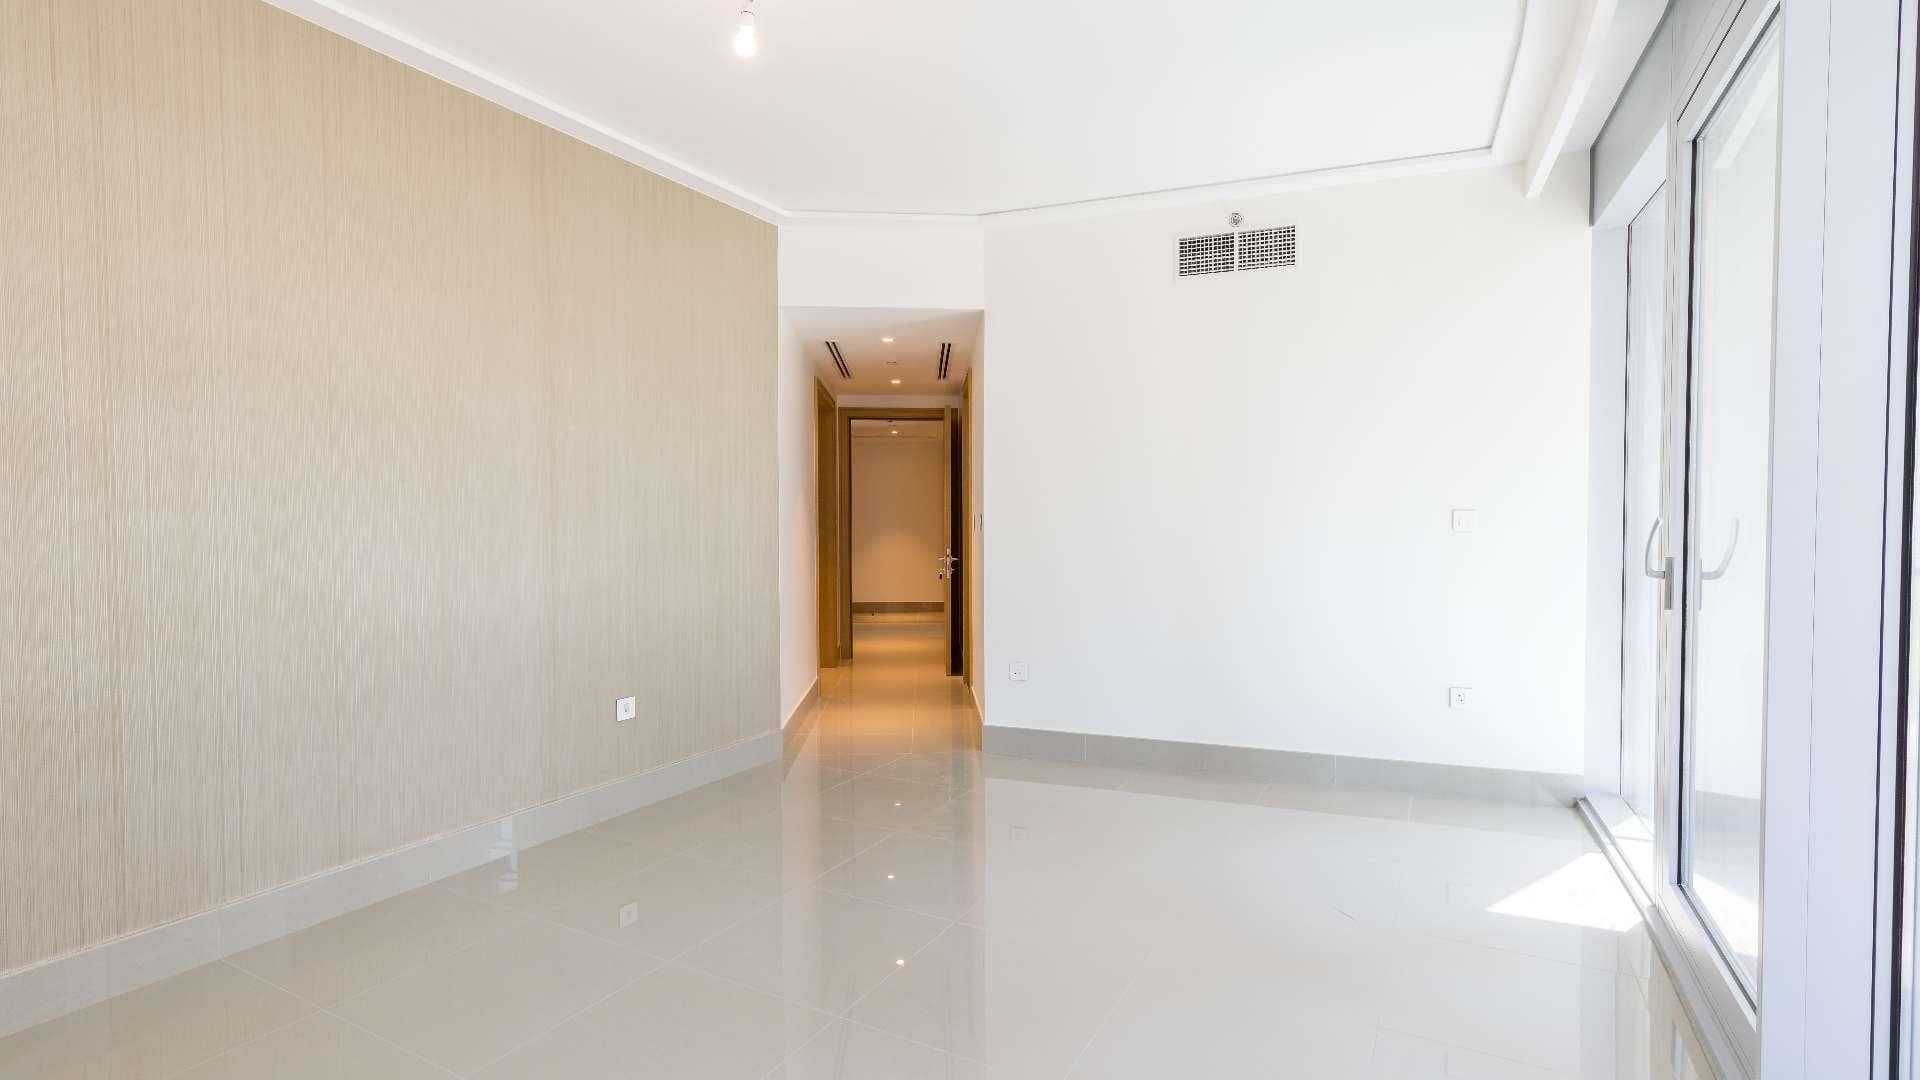 2 Bedroom Apartment For Rent Burj Khalifa Area Lp21313 1f91206c5d6d7700.jpg